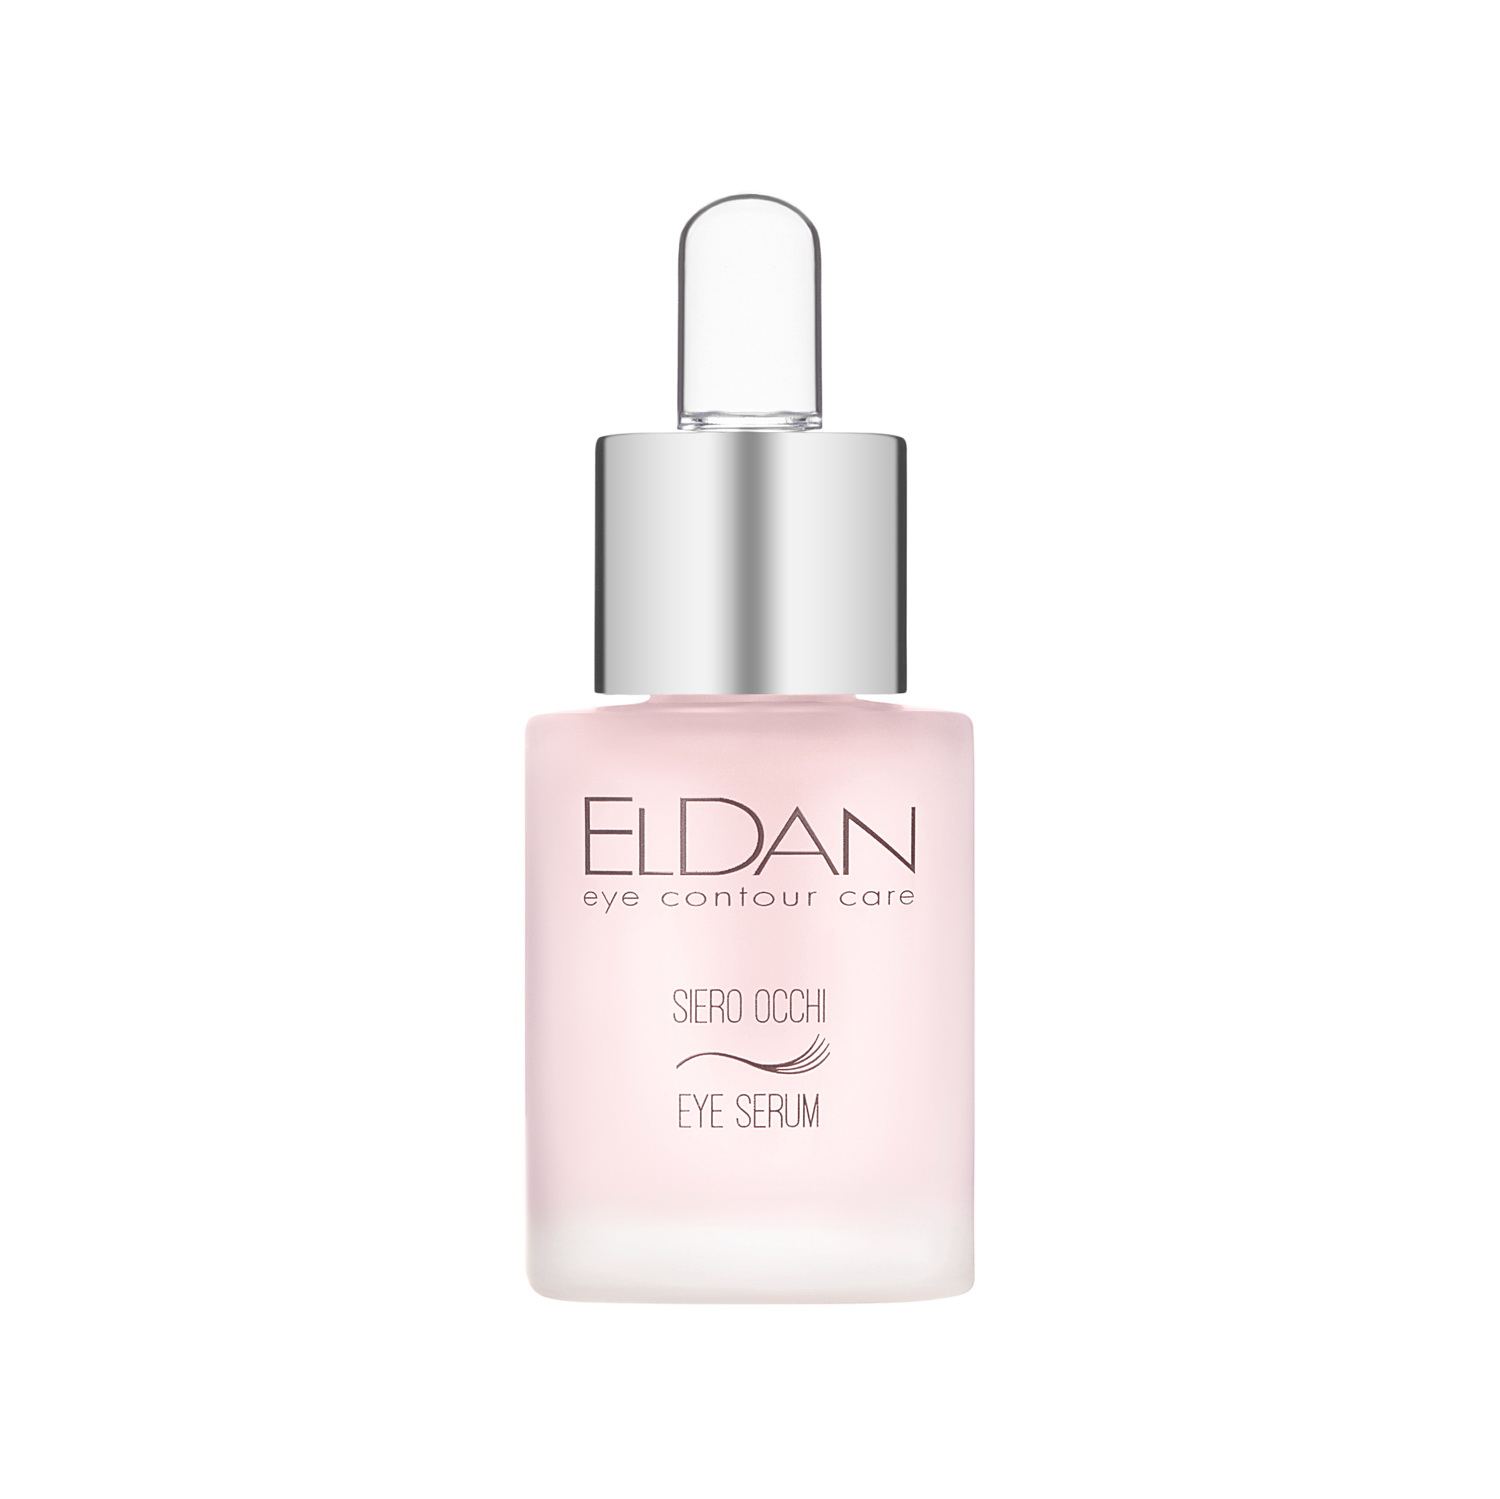 Сыворотка для глаз Eldan Cosmetics Eye Serum для всех типов кожи, 15 мл xlash cosmetics growth serum mascara термотушь с сывороткой для роста ресниц